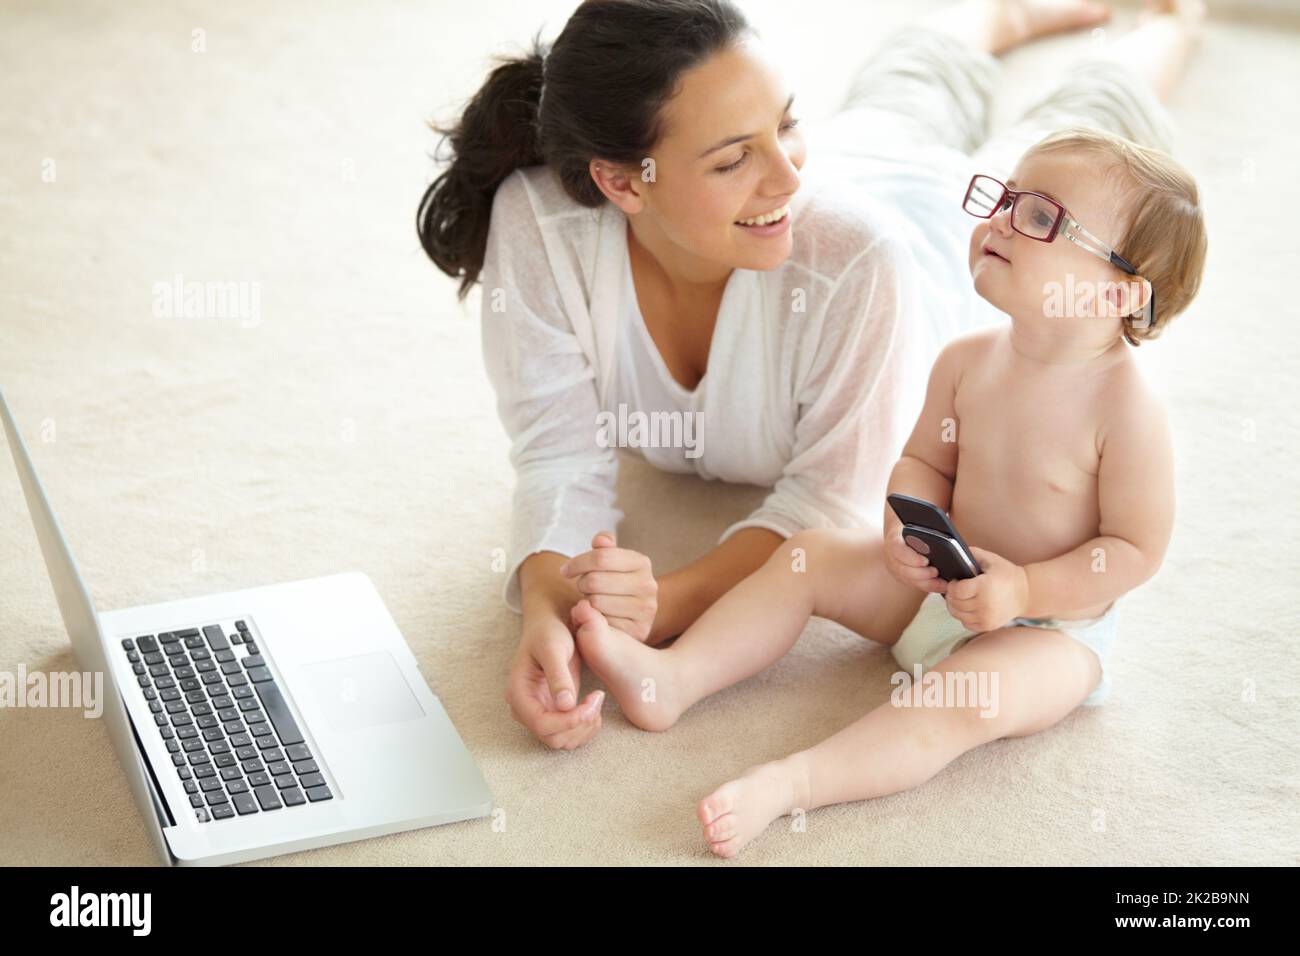 Shes bestimmt für große Dinge. Ein süßes kleines Baby, das eine Brille ihrer Mutter trägt und ein Mobiltelefon in der Hand hält, während es vor einem Laptop sitzt. Stockfoto